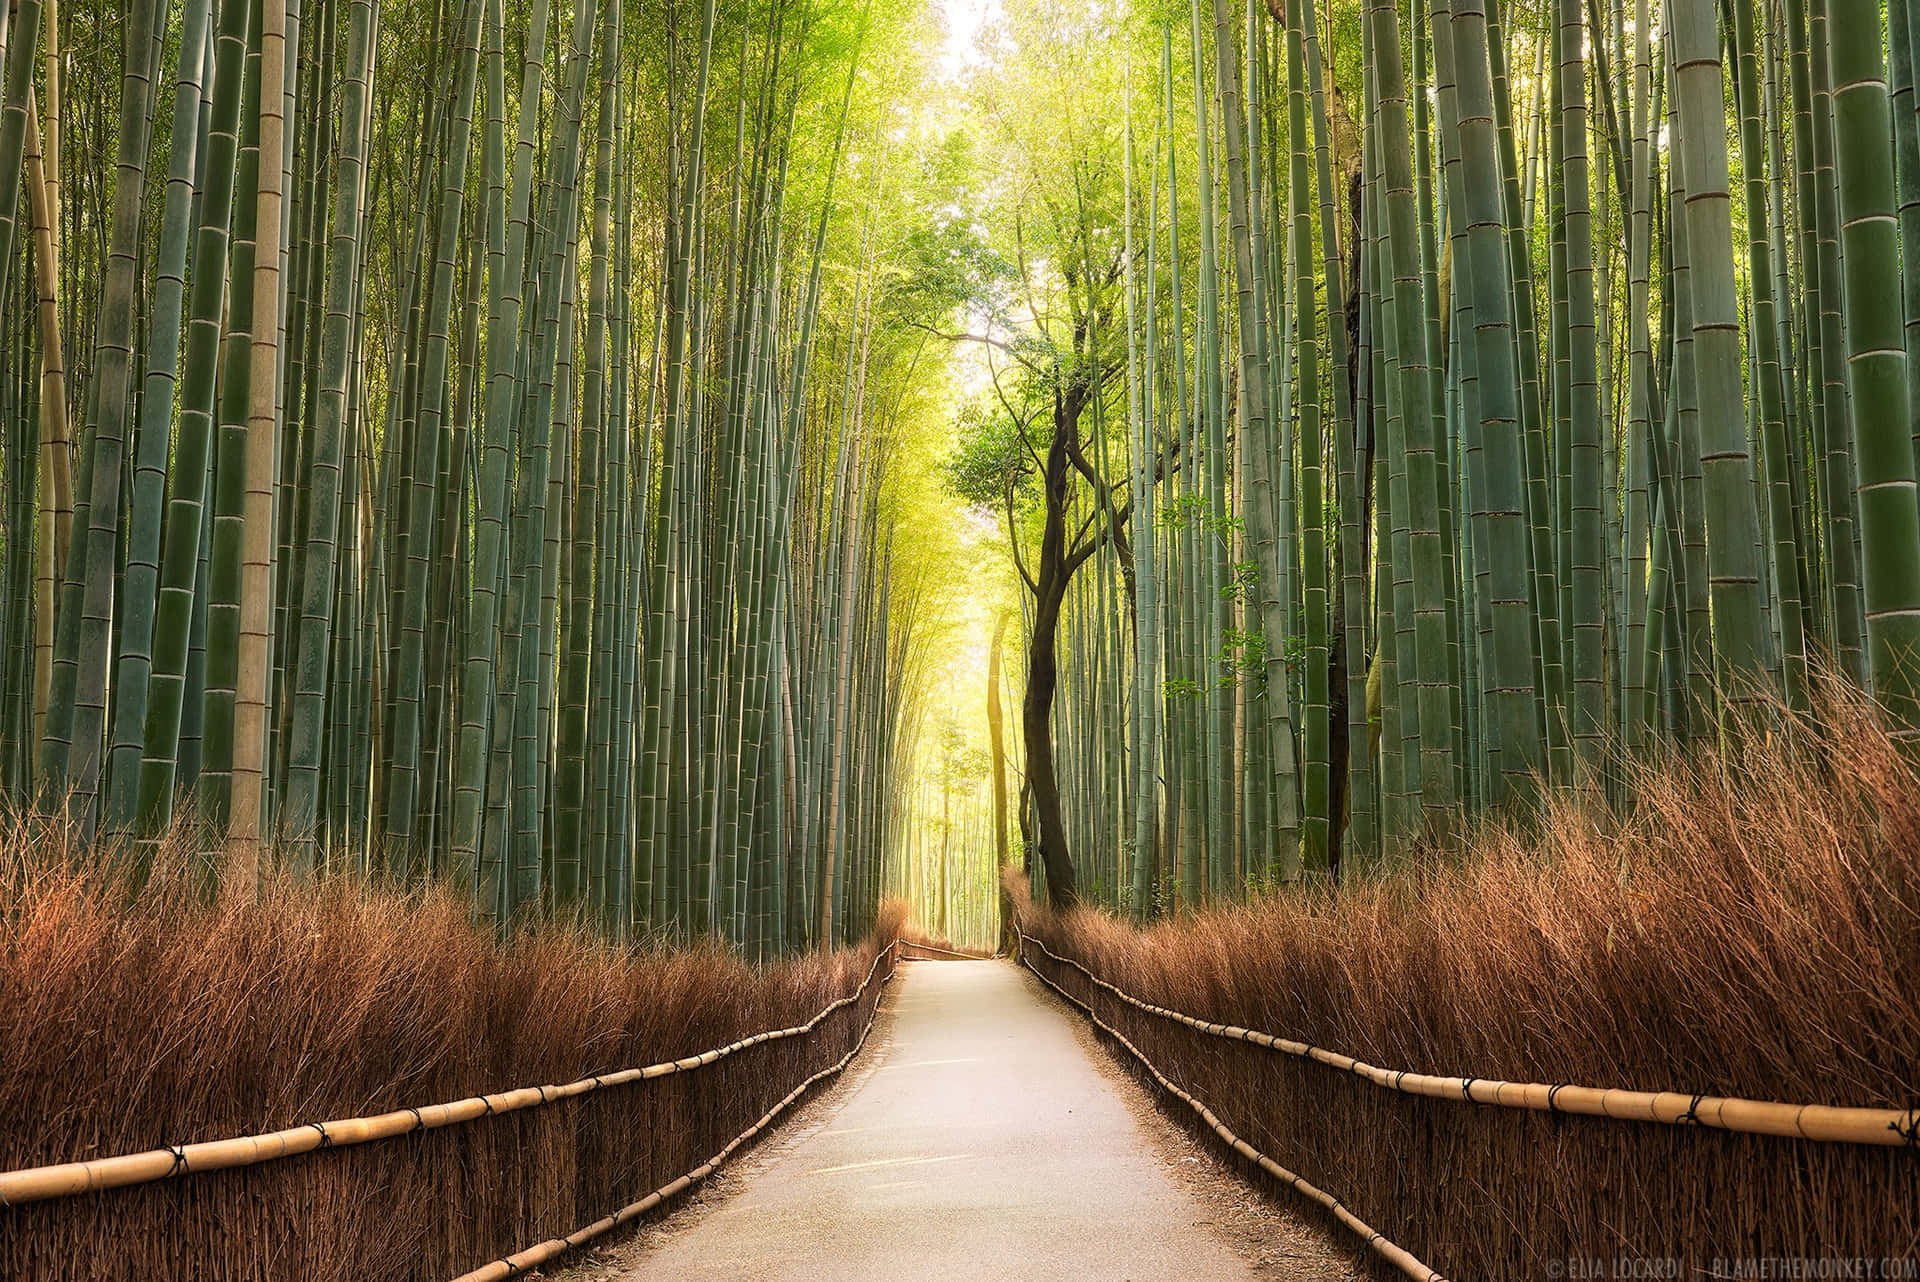 Imágenes De Bosque De Bambú